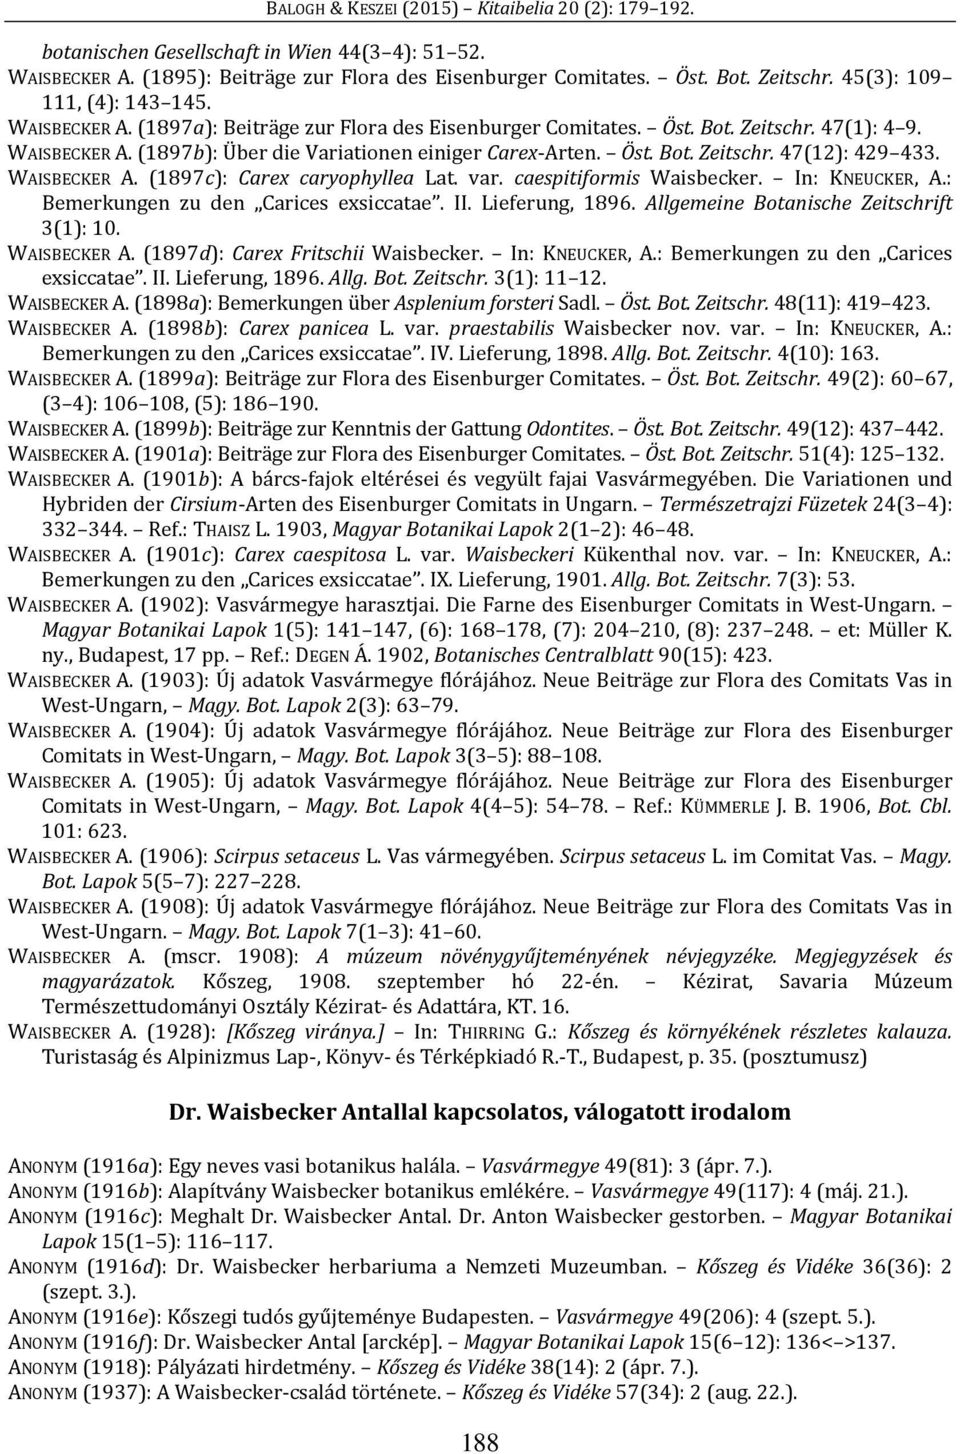 caespitiformis Waisbecker. In: KNEUCKER, A.: Bemerkungen zu den Carices exsiccatae. II. Lieferung, 1896. Allgemeine Botanische Zeitschrift 3(1): 10. WAISBECKER A. (1897d): Carex Fritschii Waisbecker.